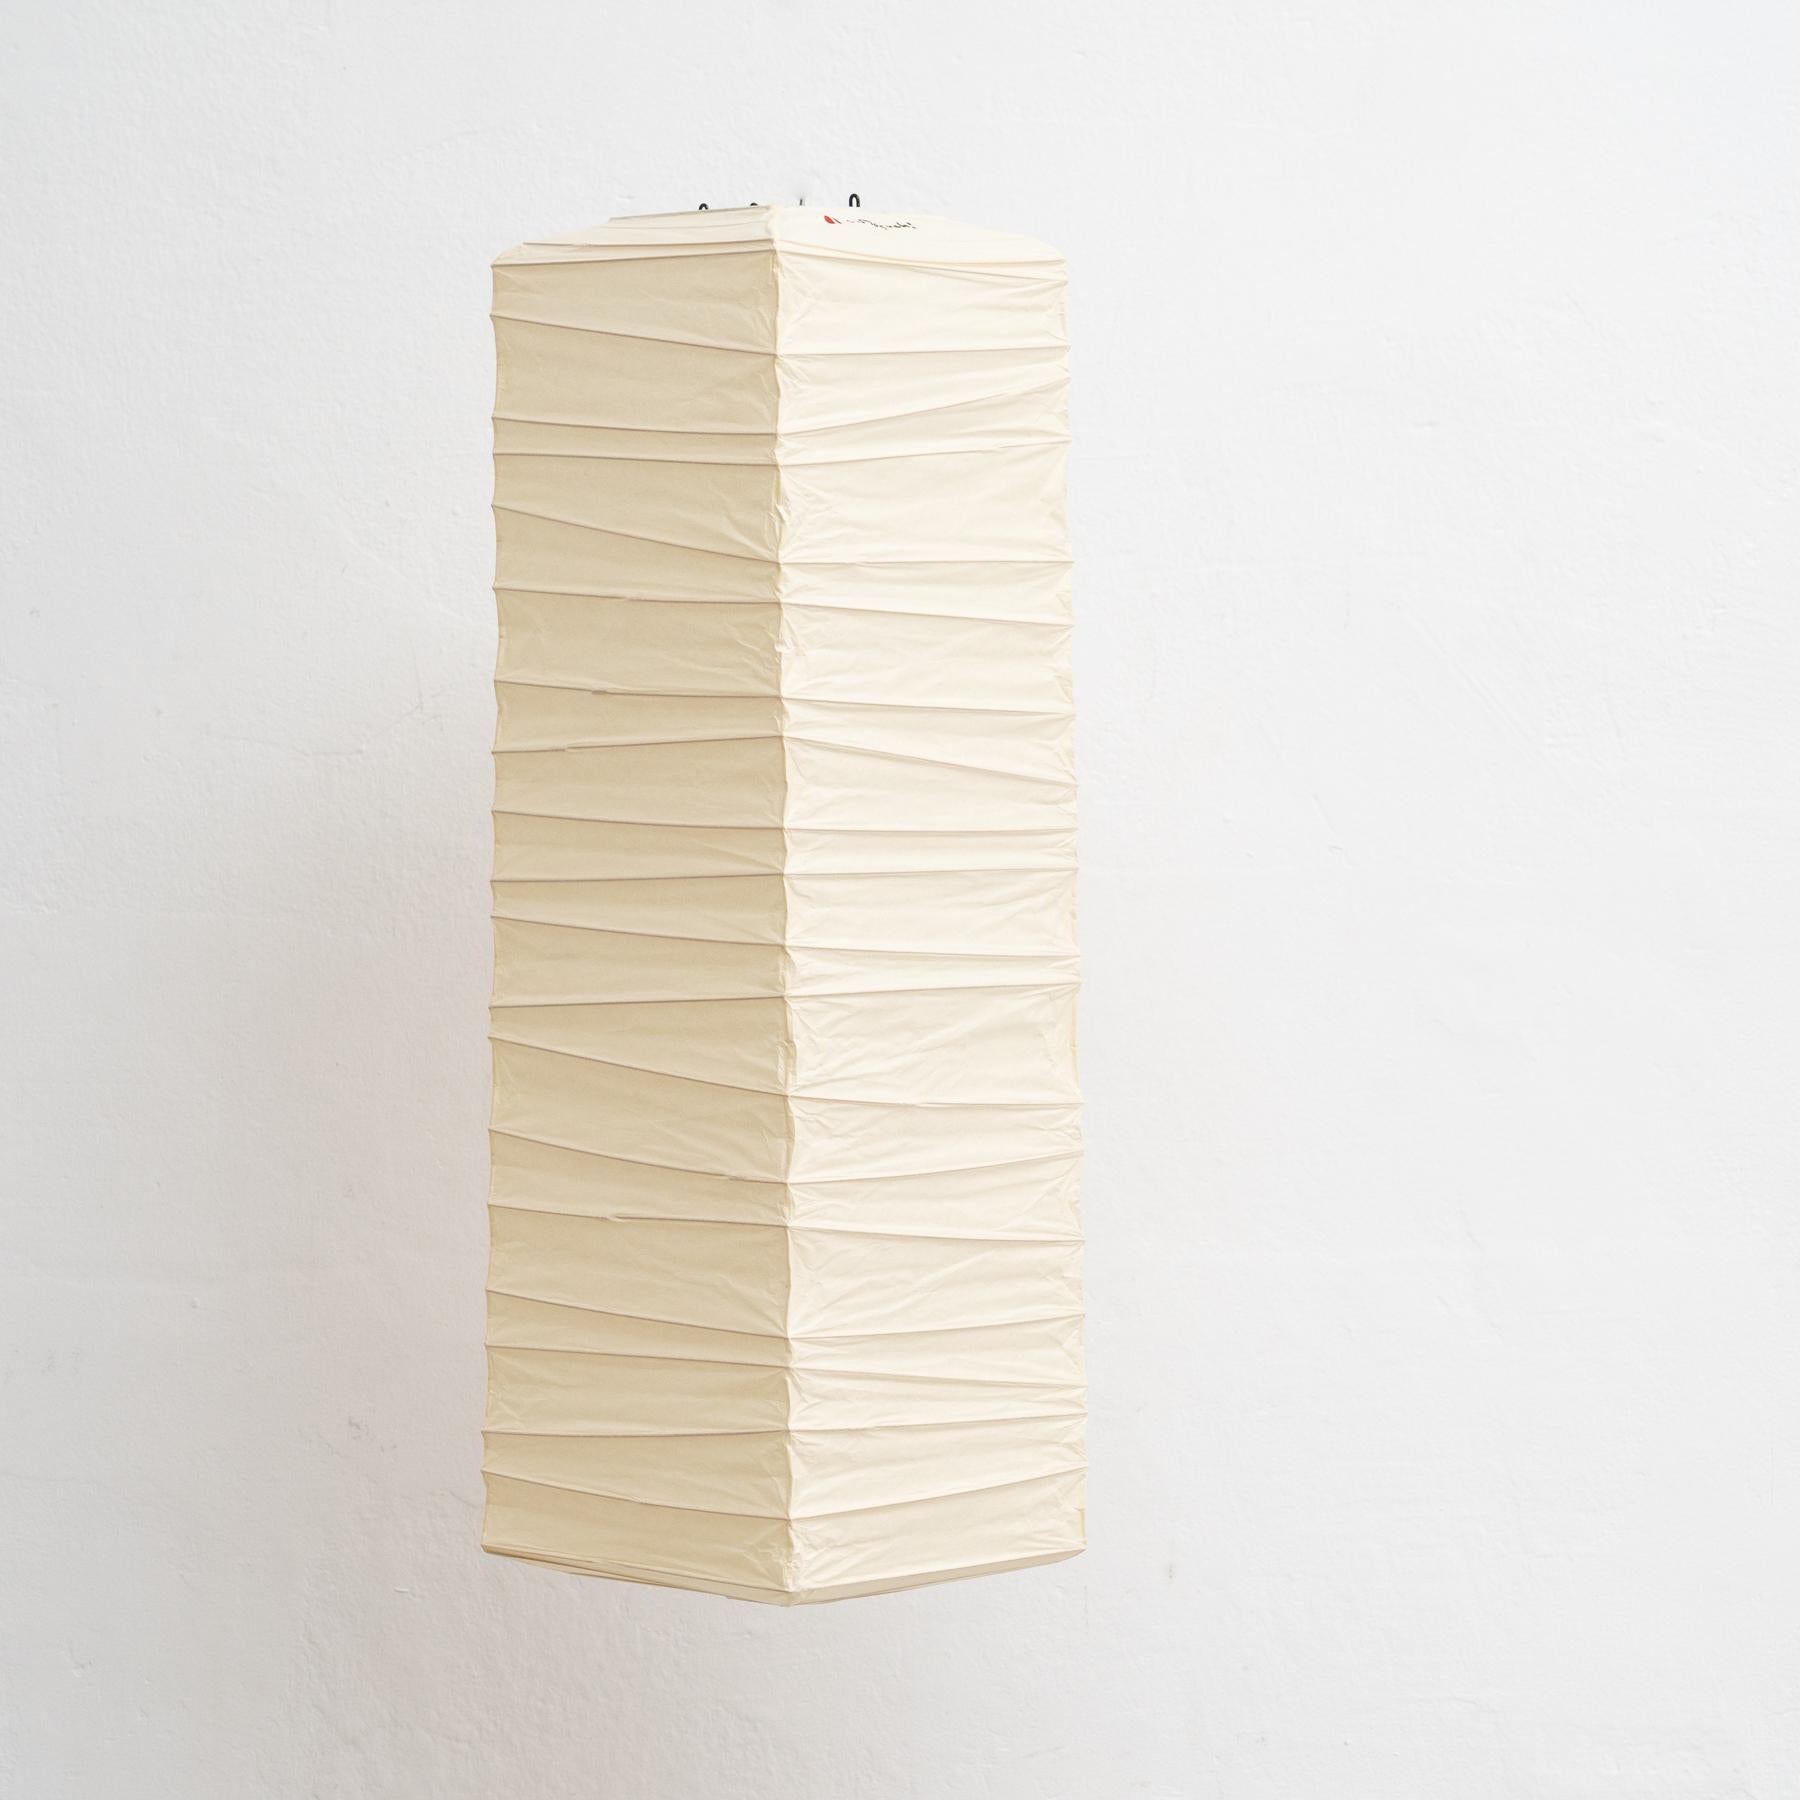 Plafonnier, modèle 70XL, conçu par Isamu Noguchi.
Fabriqué par Ozeki & Company Ltd. (Japon.)

Structure en nervures de bambou recouverte de papier washi fabriqué selon les procédures traditionnelles.

En bon état vintage.

Édition signée avec le